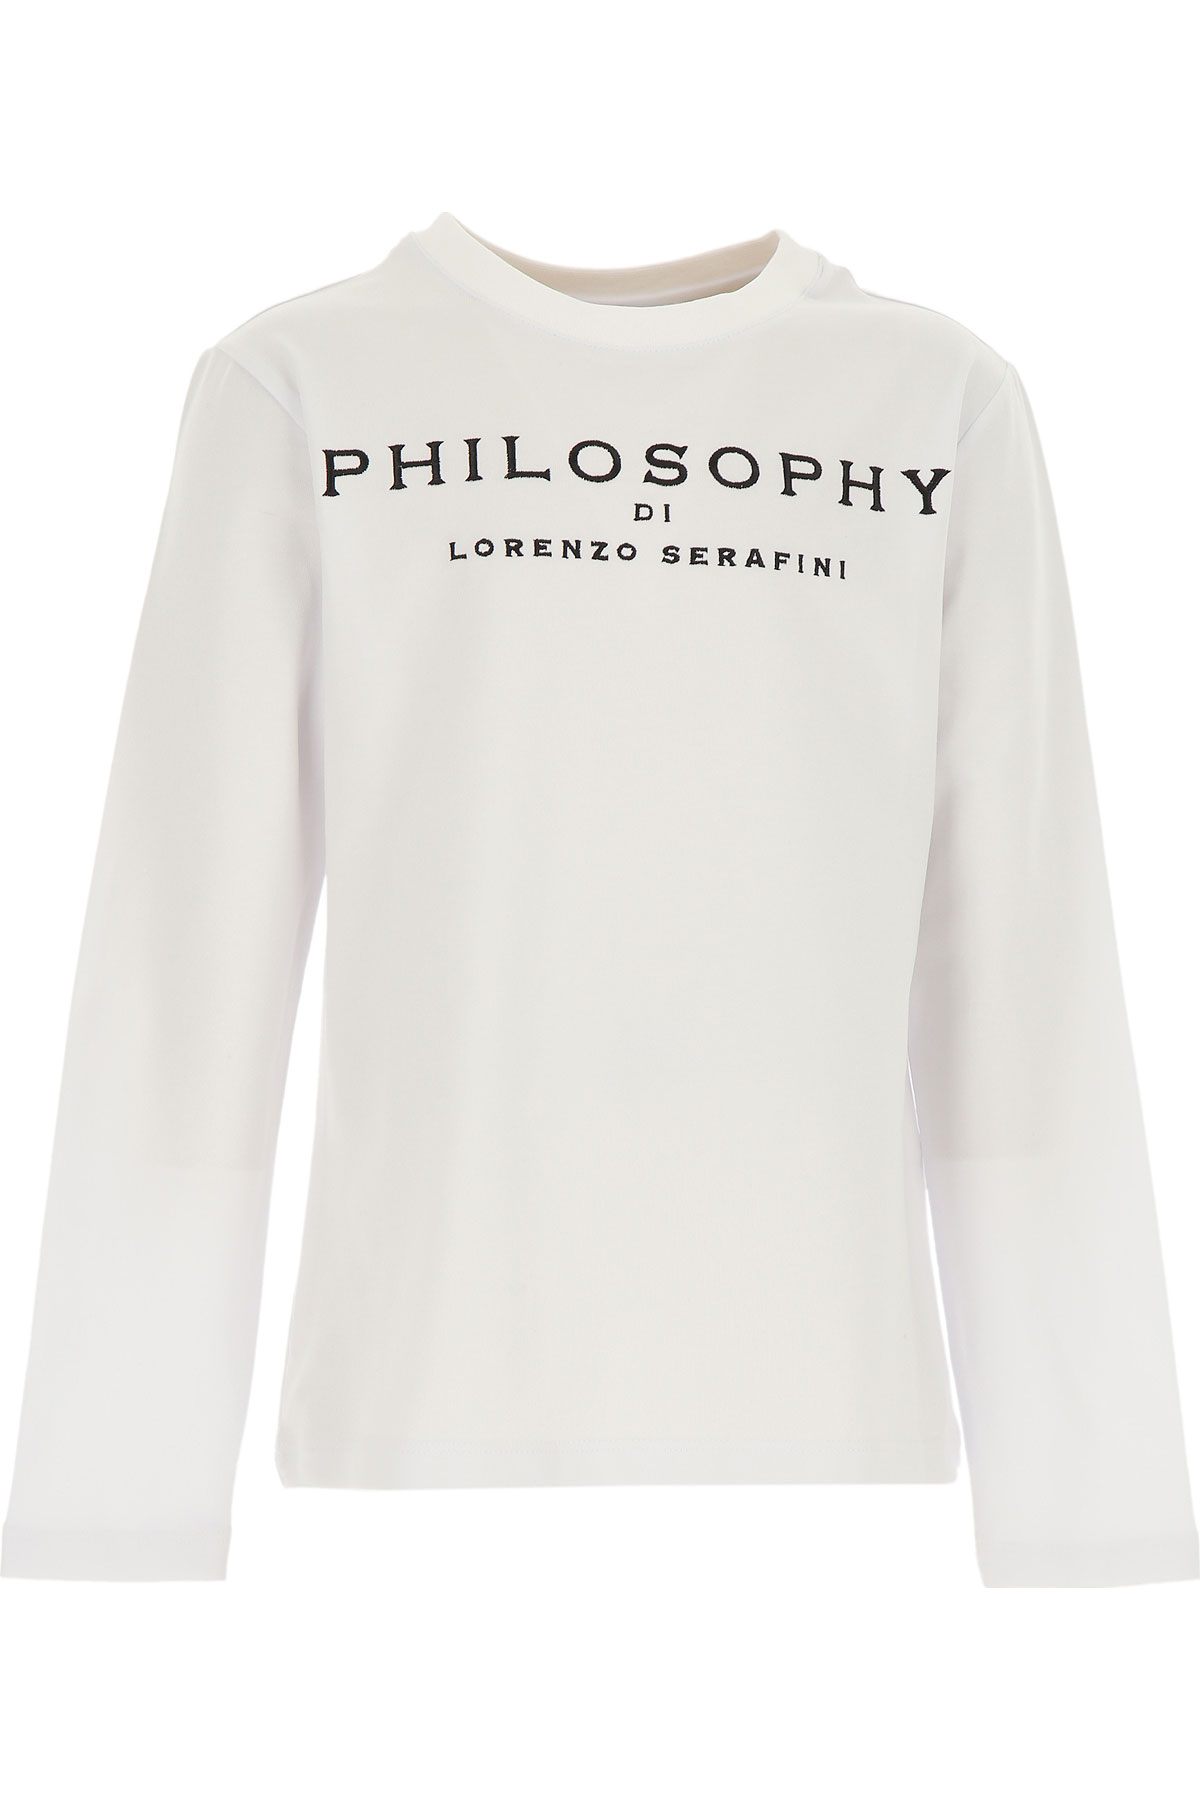 Philosophy di Lorenzo serafini Kinder T-Shirt für Mädchen Günstig im Sale, Weiss, Baumwolle, 2017, L M S XL XS XXL